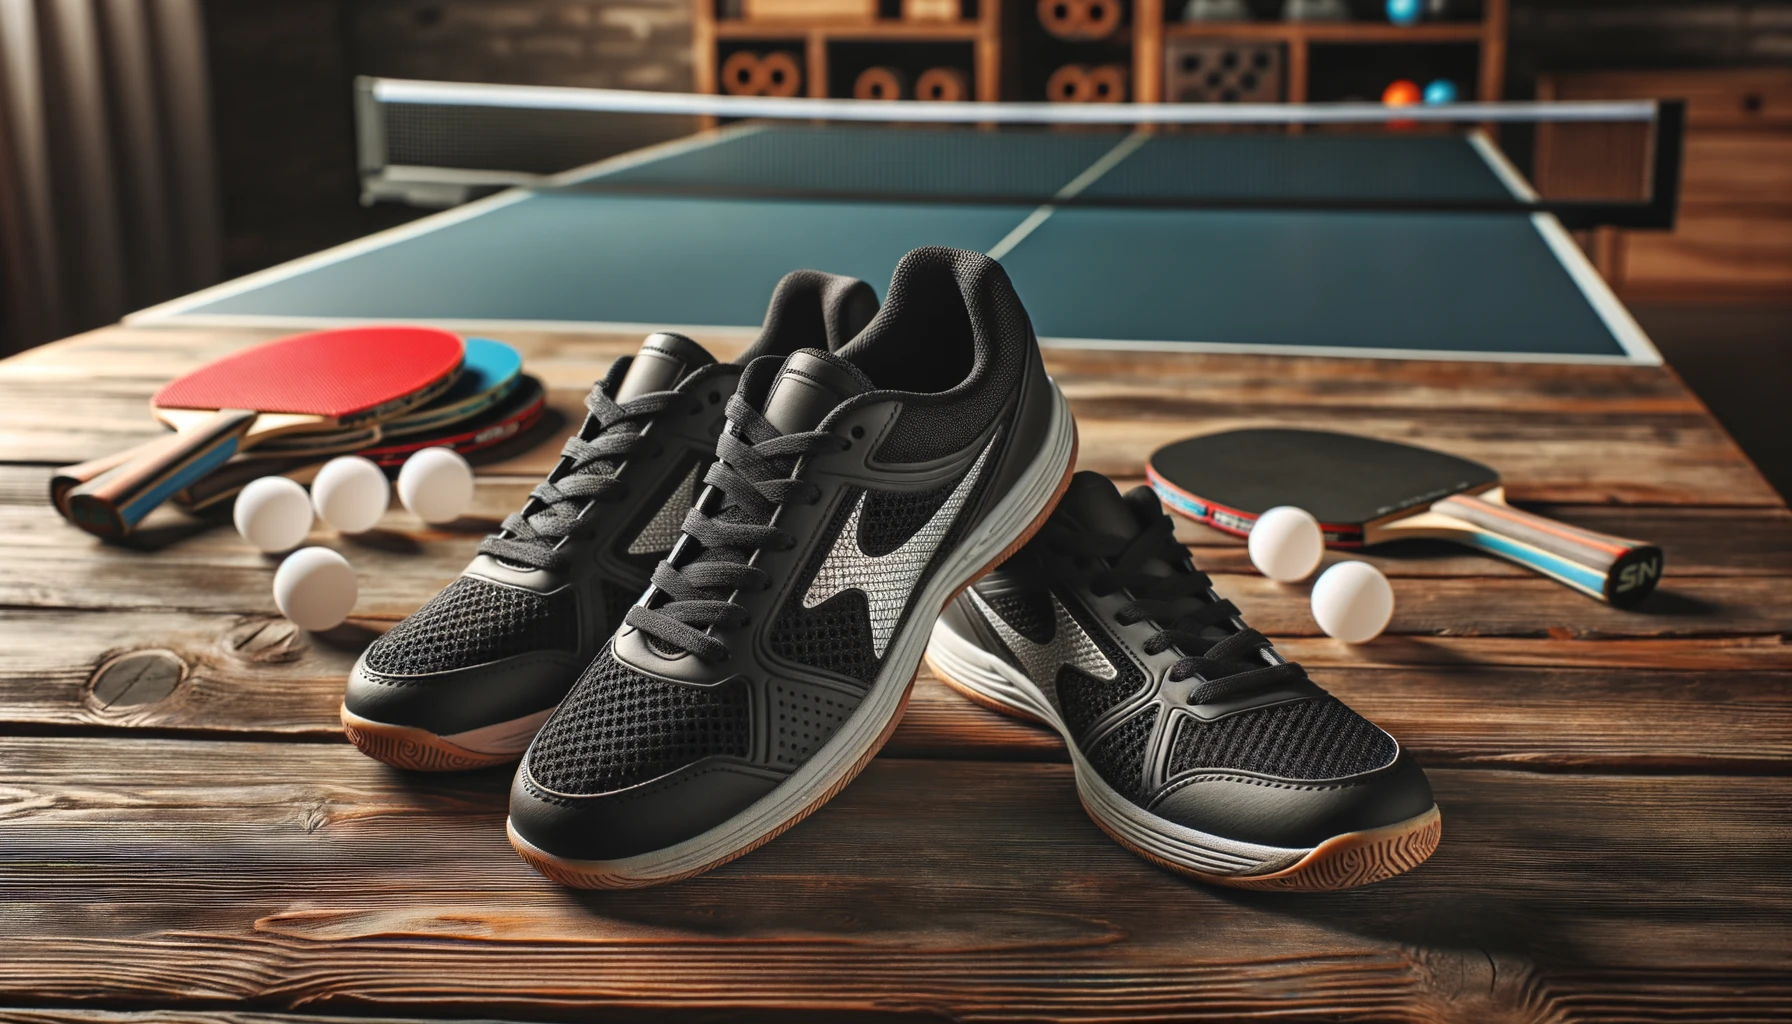 Foto von einem Paar professioneller Tischtennisschuhe, die auf einer hölzernen Tischtennisplatte mit Schlägern und Bällen platziert sind, die überall verstreut sind